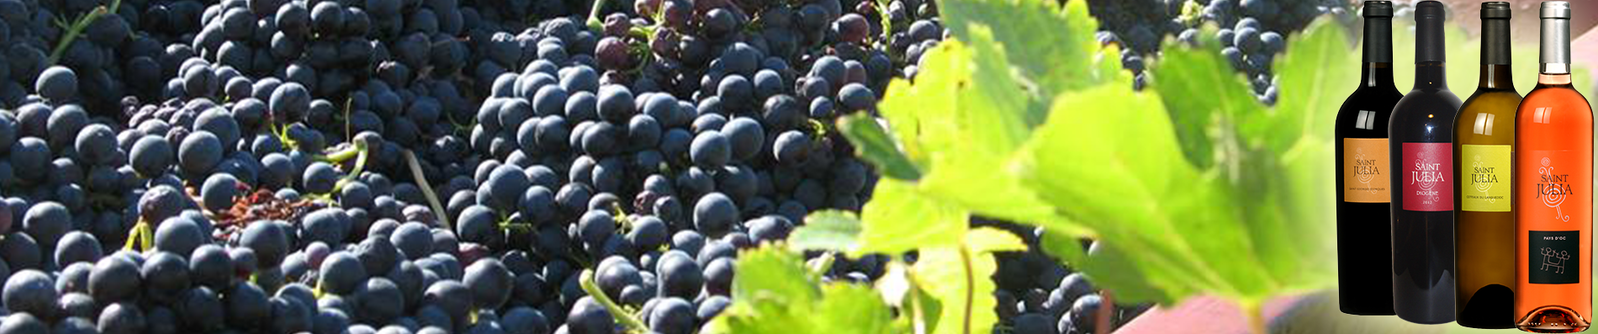 Domaine Saint Julia, vente de vins du pays de languedoc, Montpellier, Hérault 34.